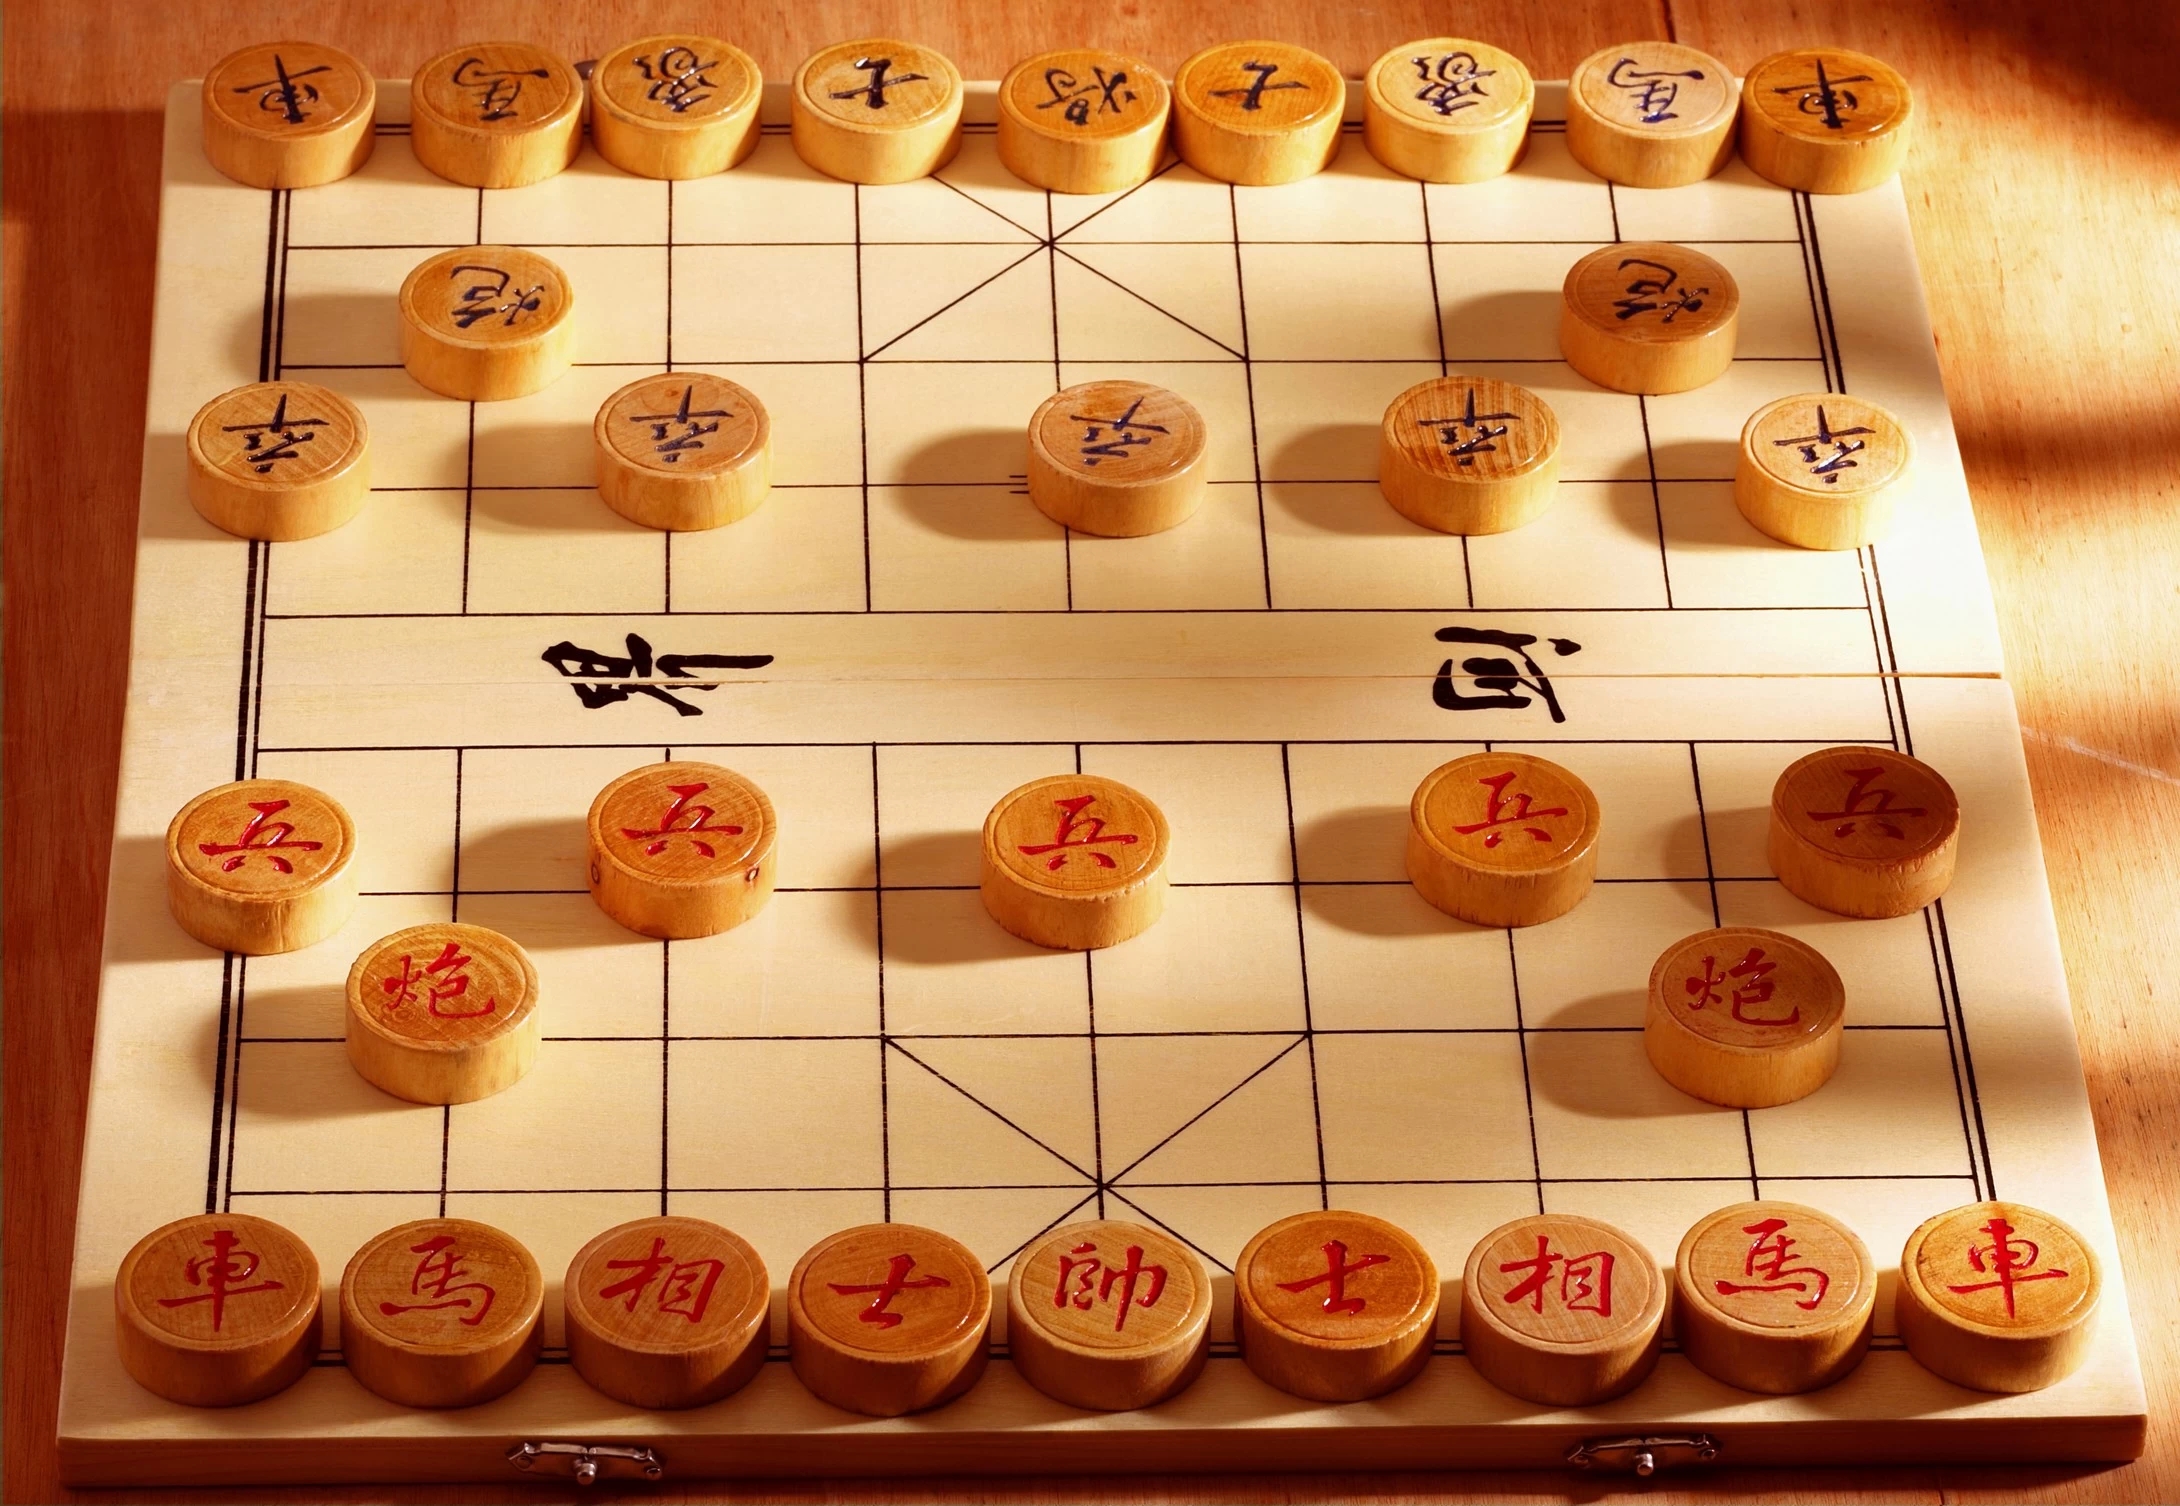 中国象棋比赛规则(2)